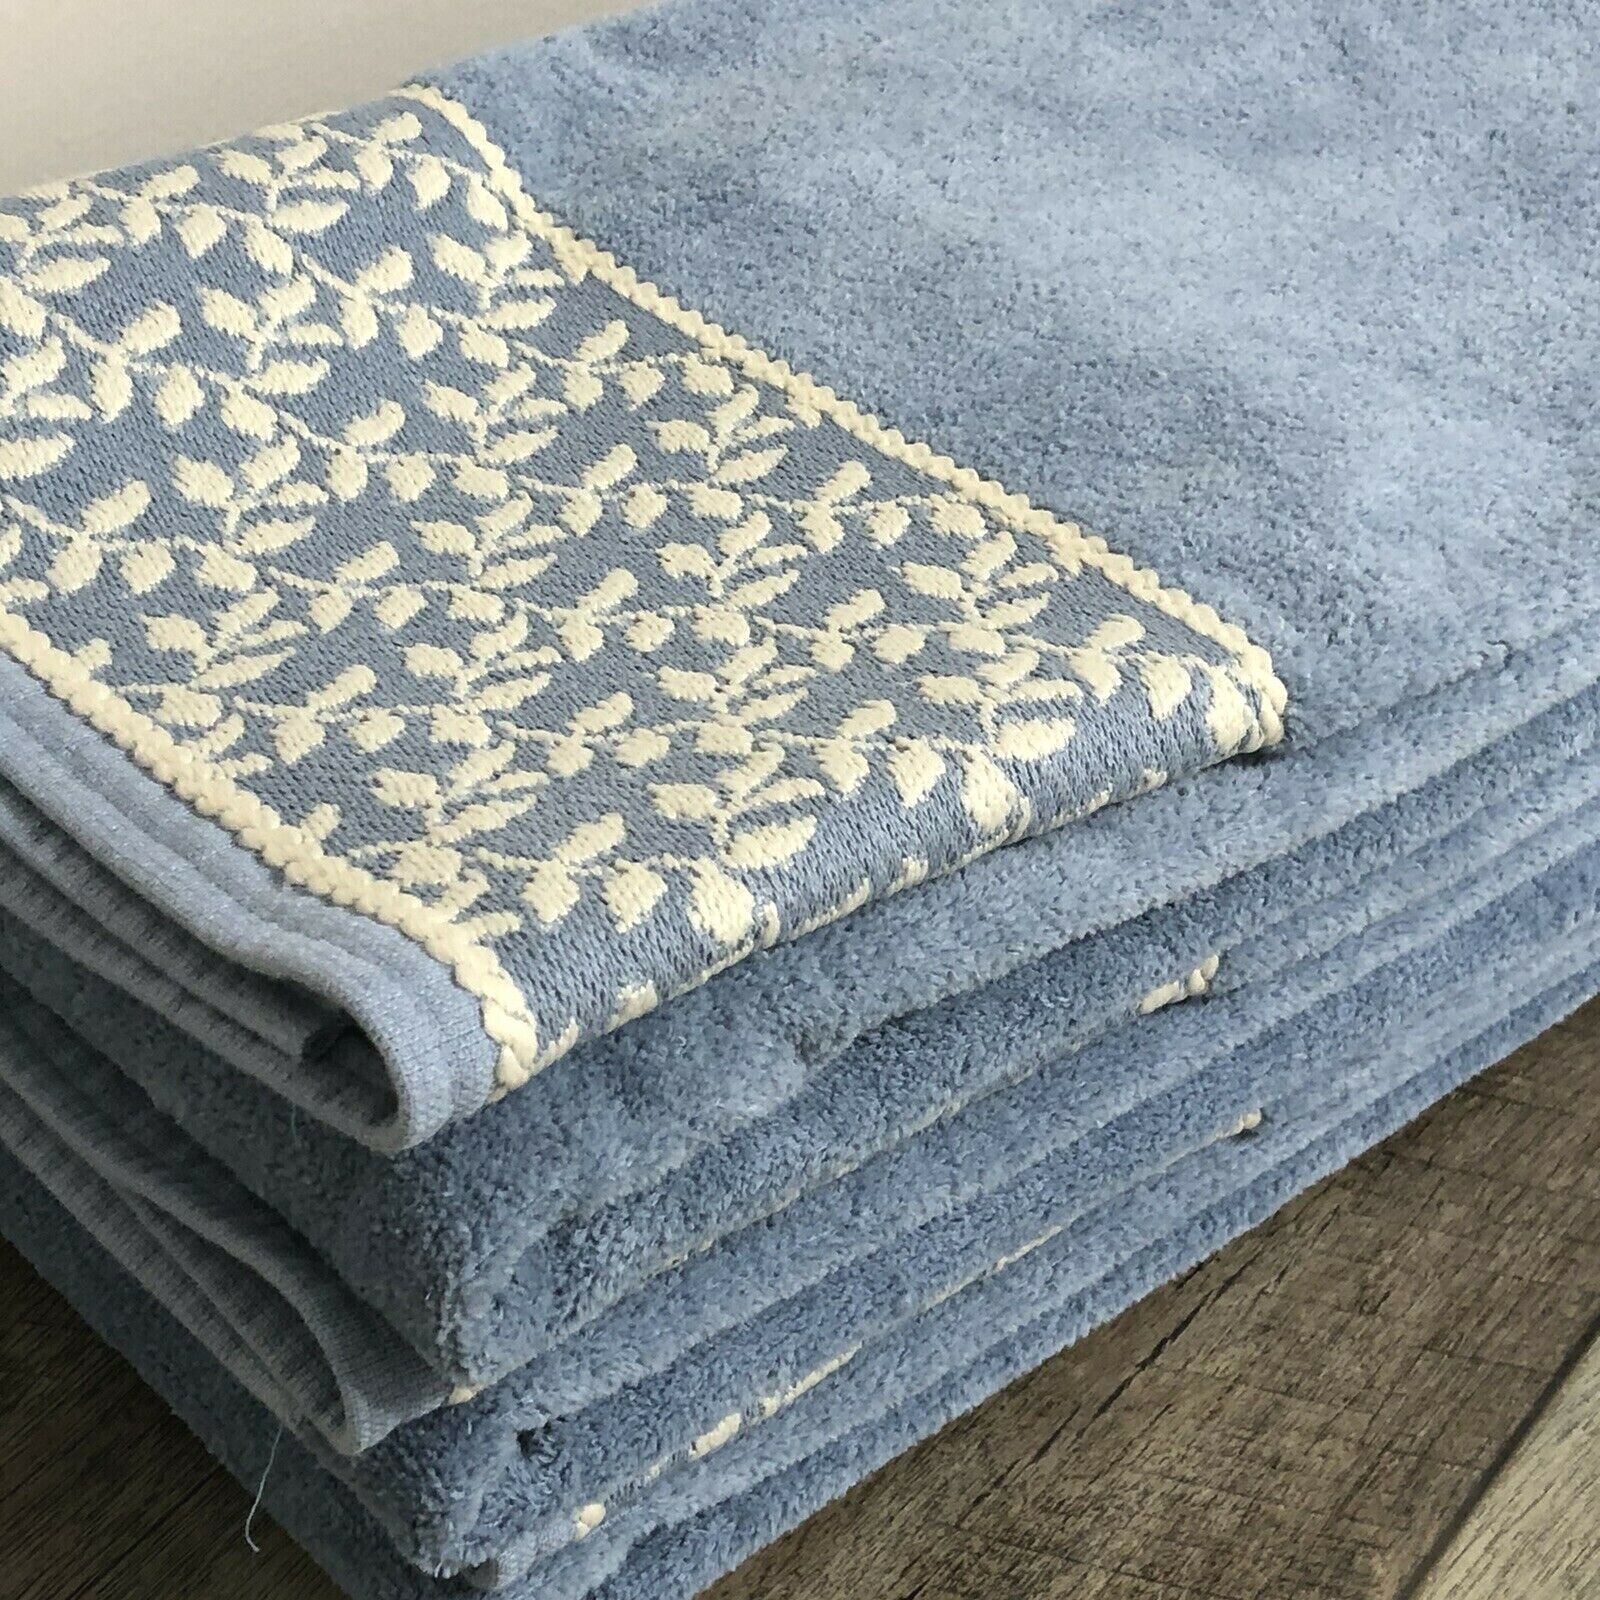 MARTEX (3) Bath Towel Blue Cotton Embroidered Leaf Border 48x26.5\